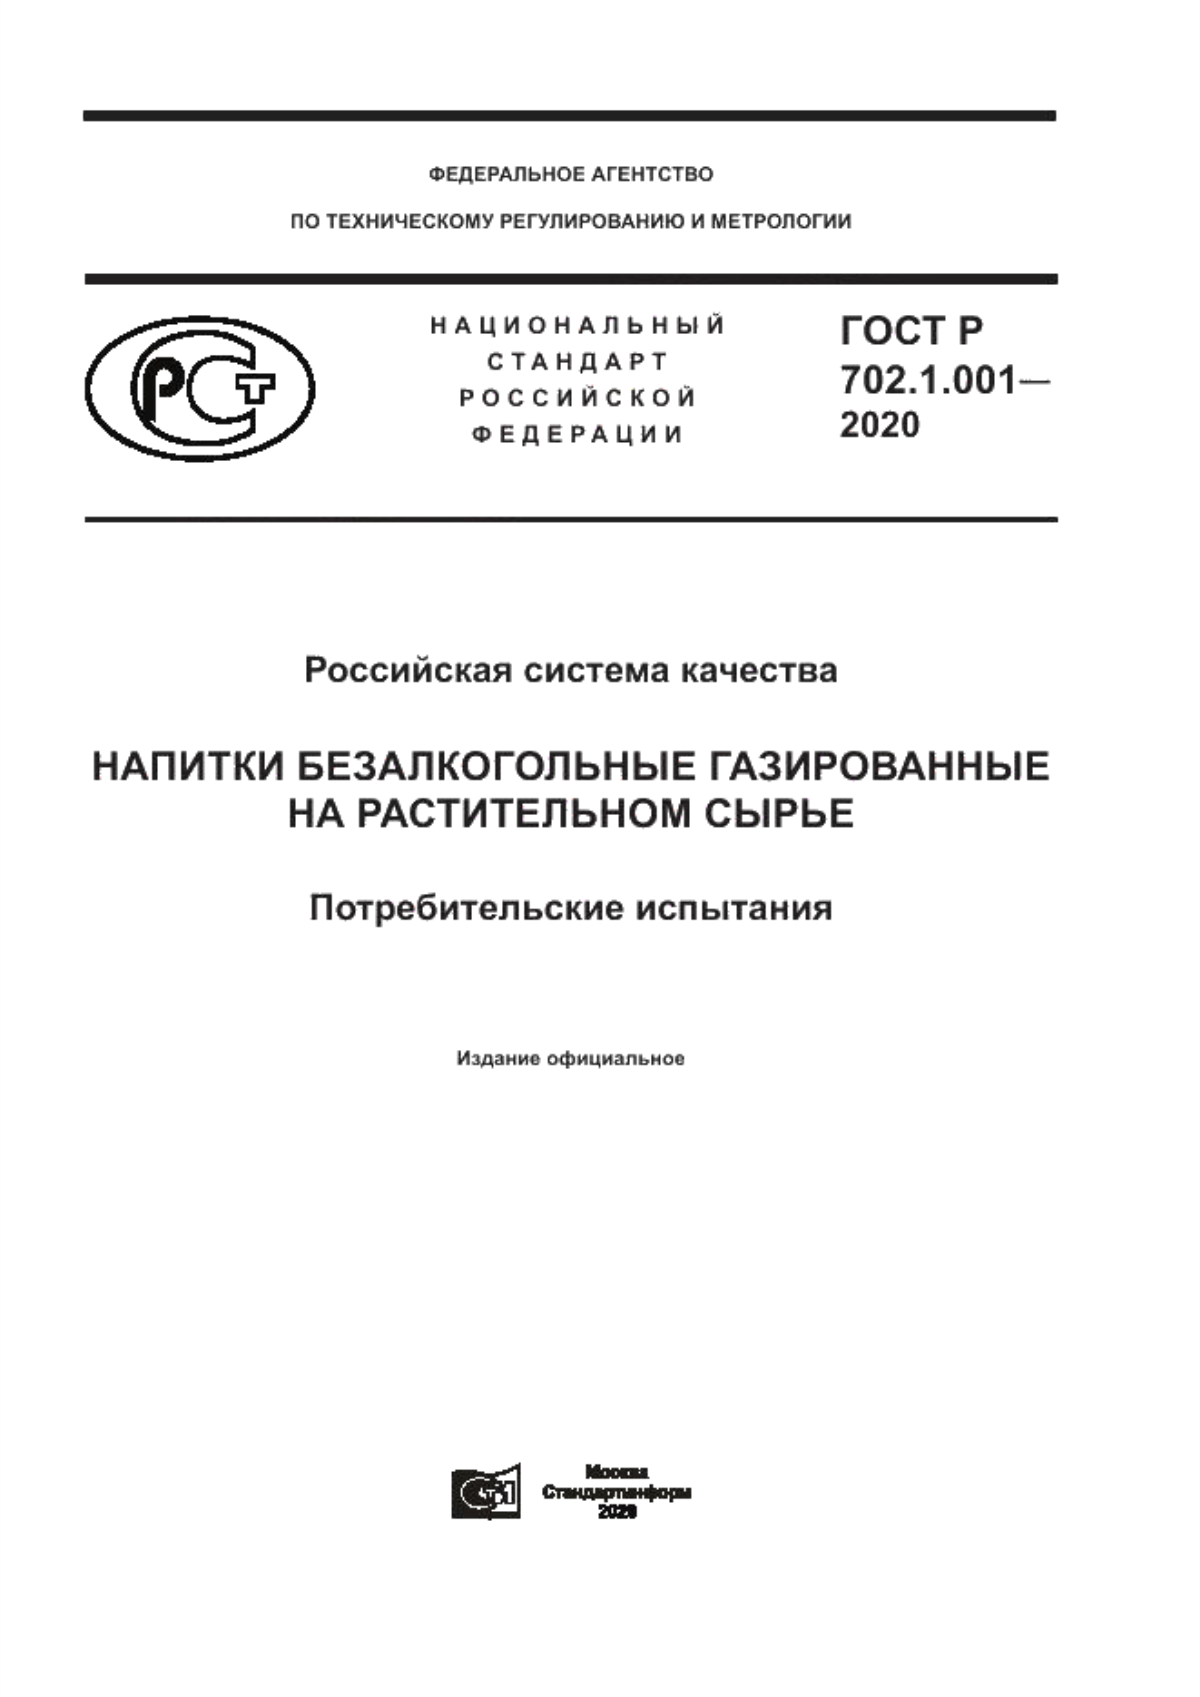 ГОСТ Р 702.1.001-2020 Российская система качества. Напитки безалкогольные газированные на растительном сырье. Потребительские испытания